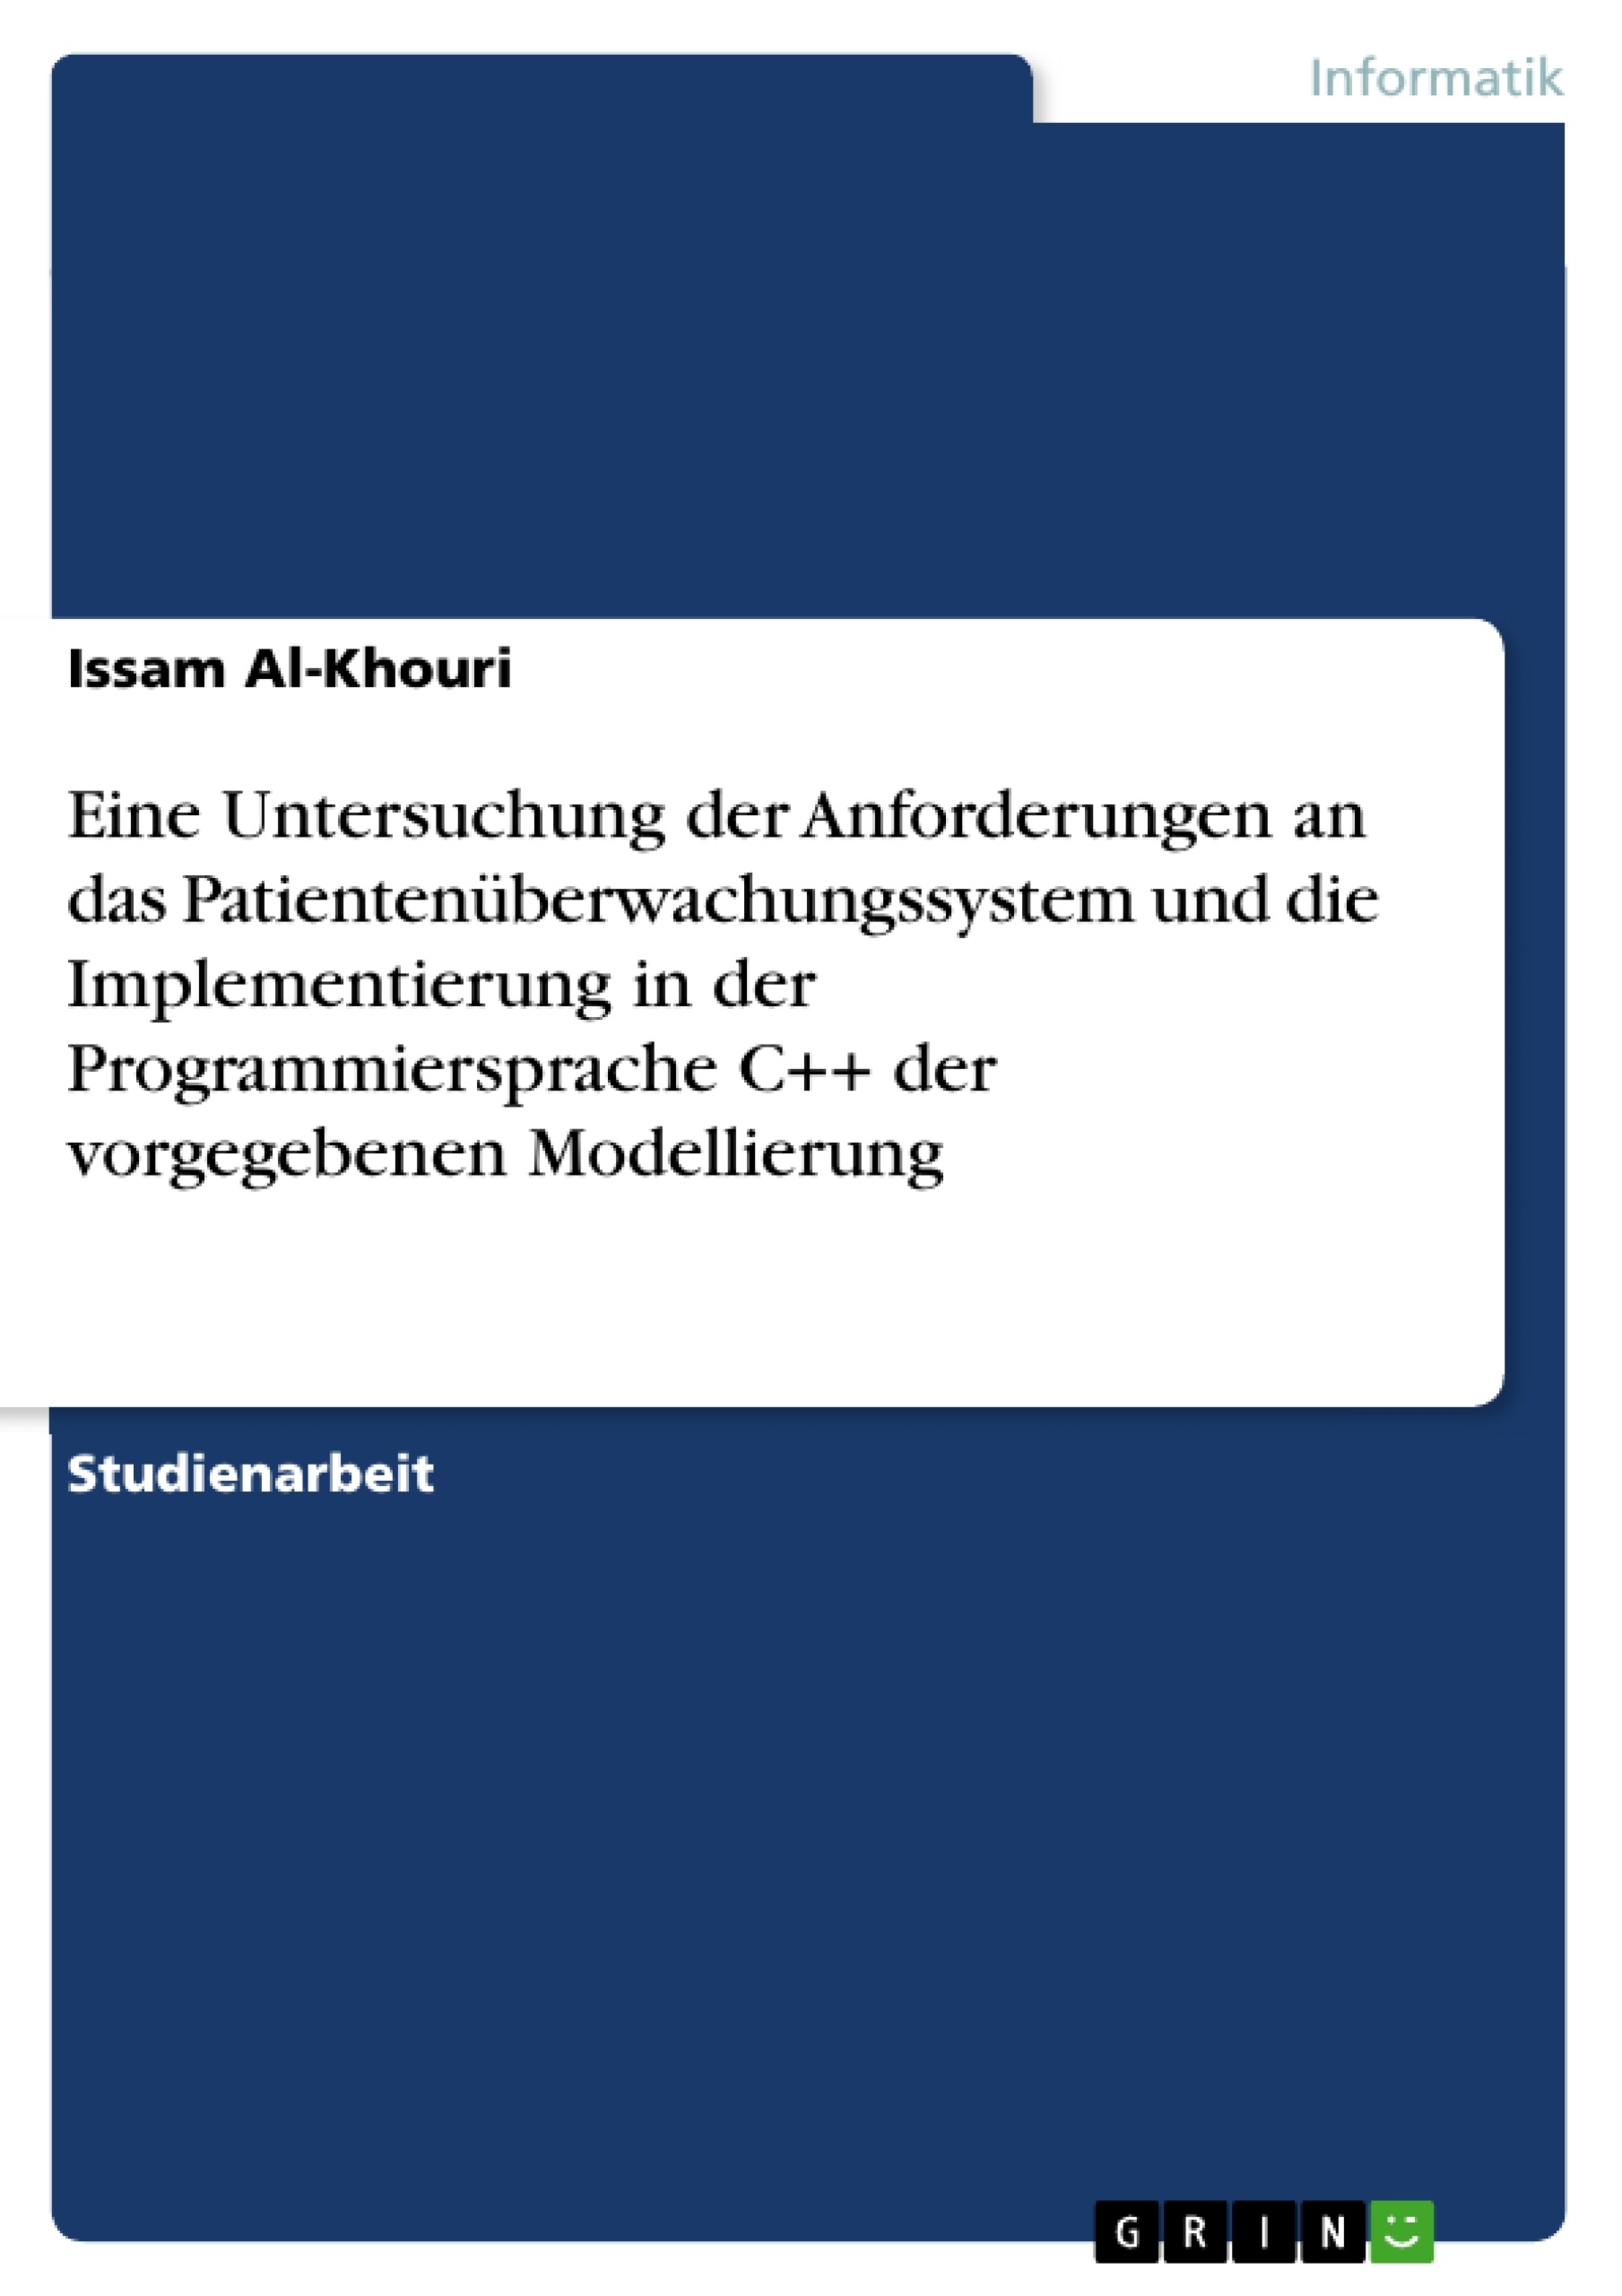 Title: Eine Untersuchung der Anforderungen an das Patientenüberwachungssystem und die Implementierung in der Programmiersprache C++ der vorgegebenen Modellierung